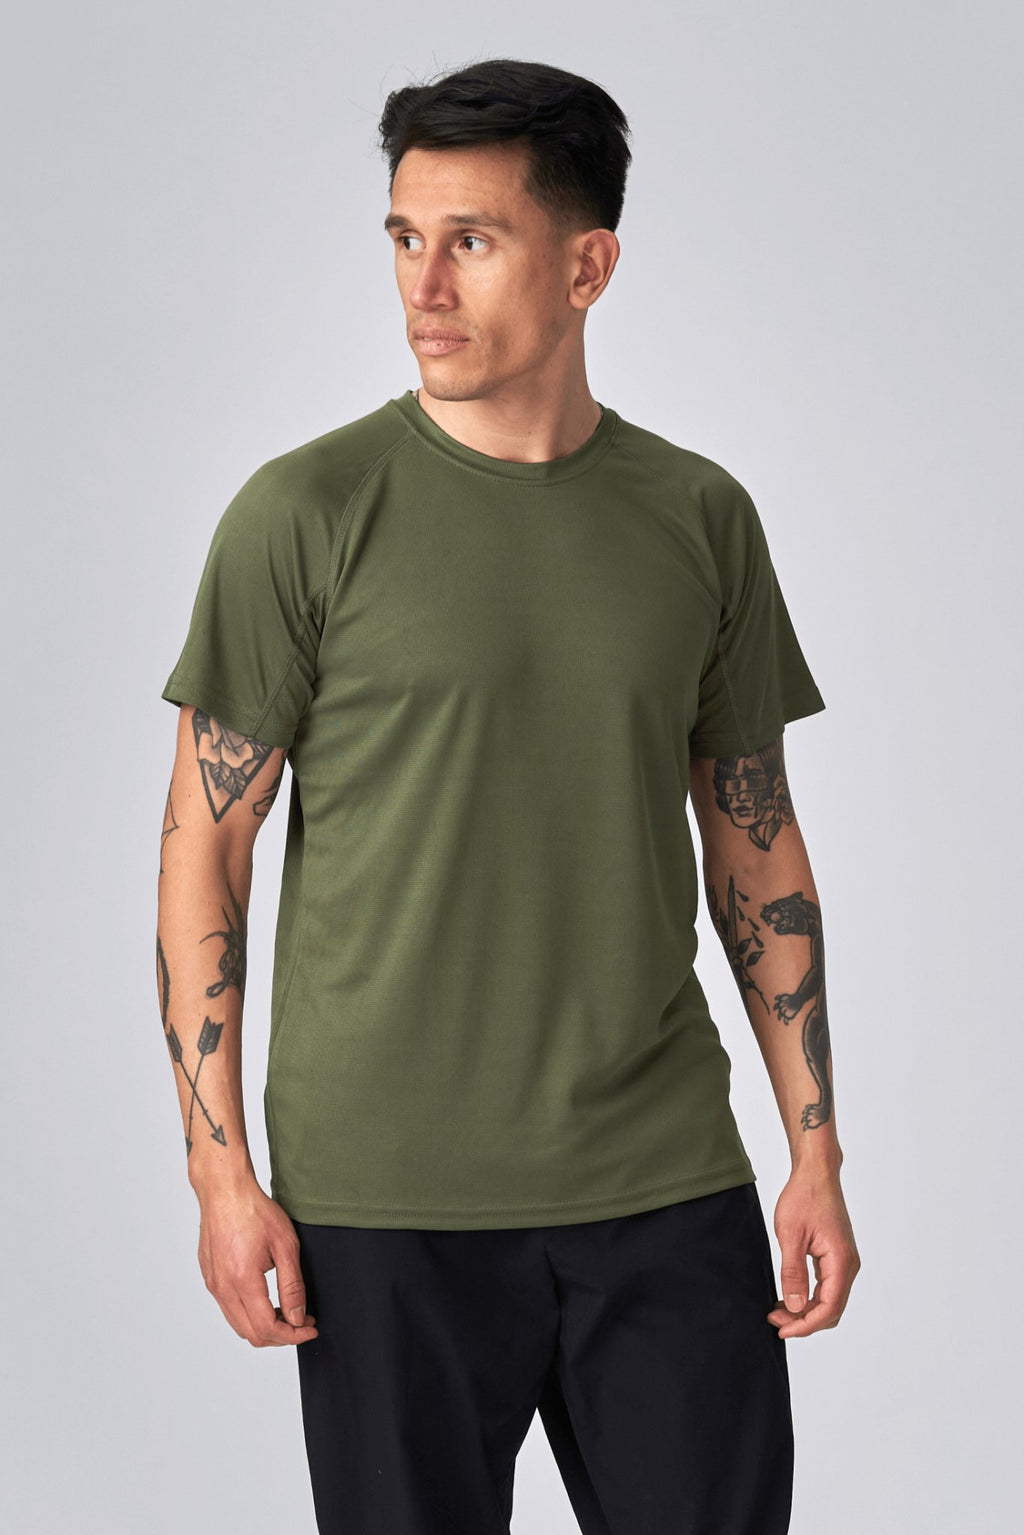 T -shirt di addestramento - Green dell'esercito